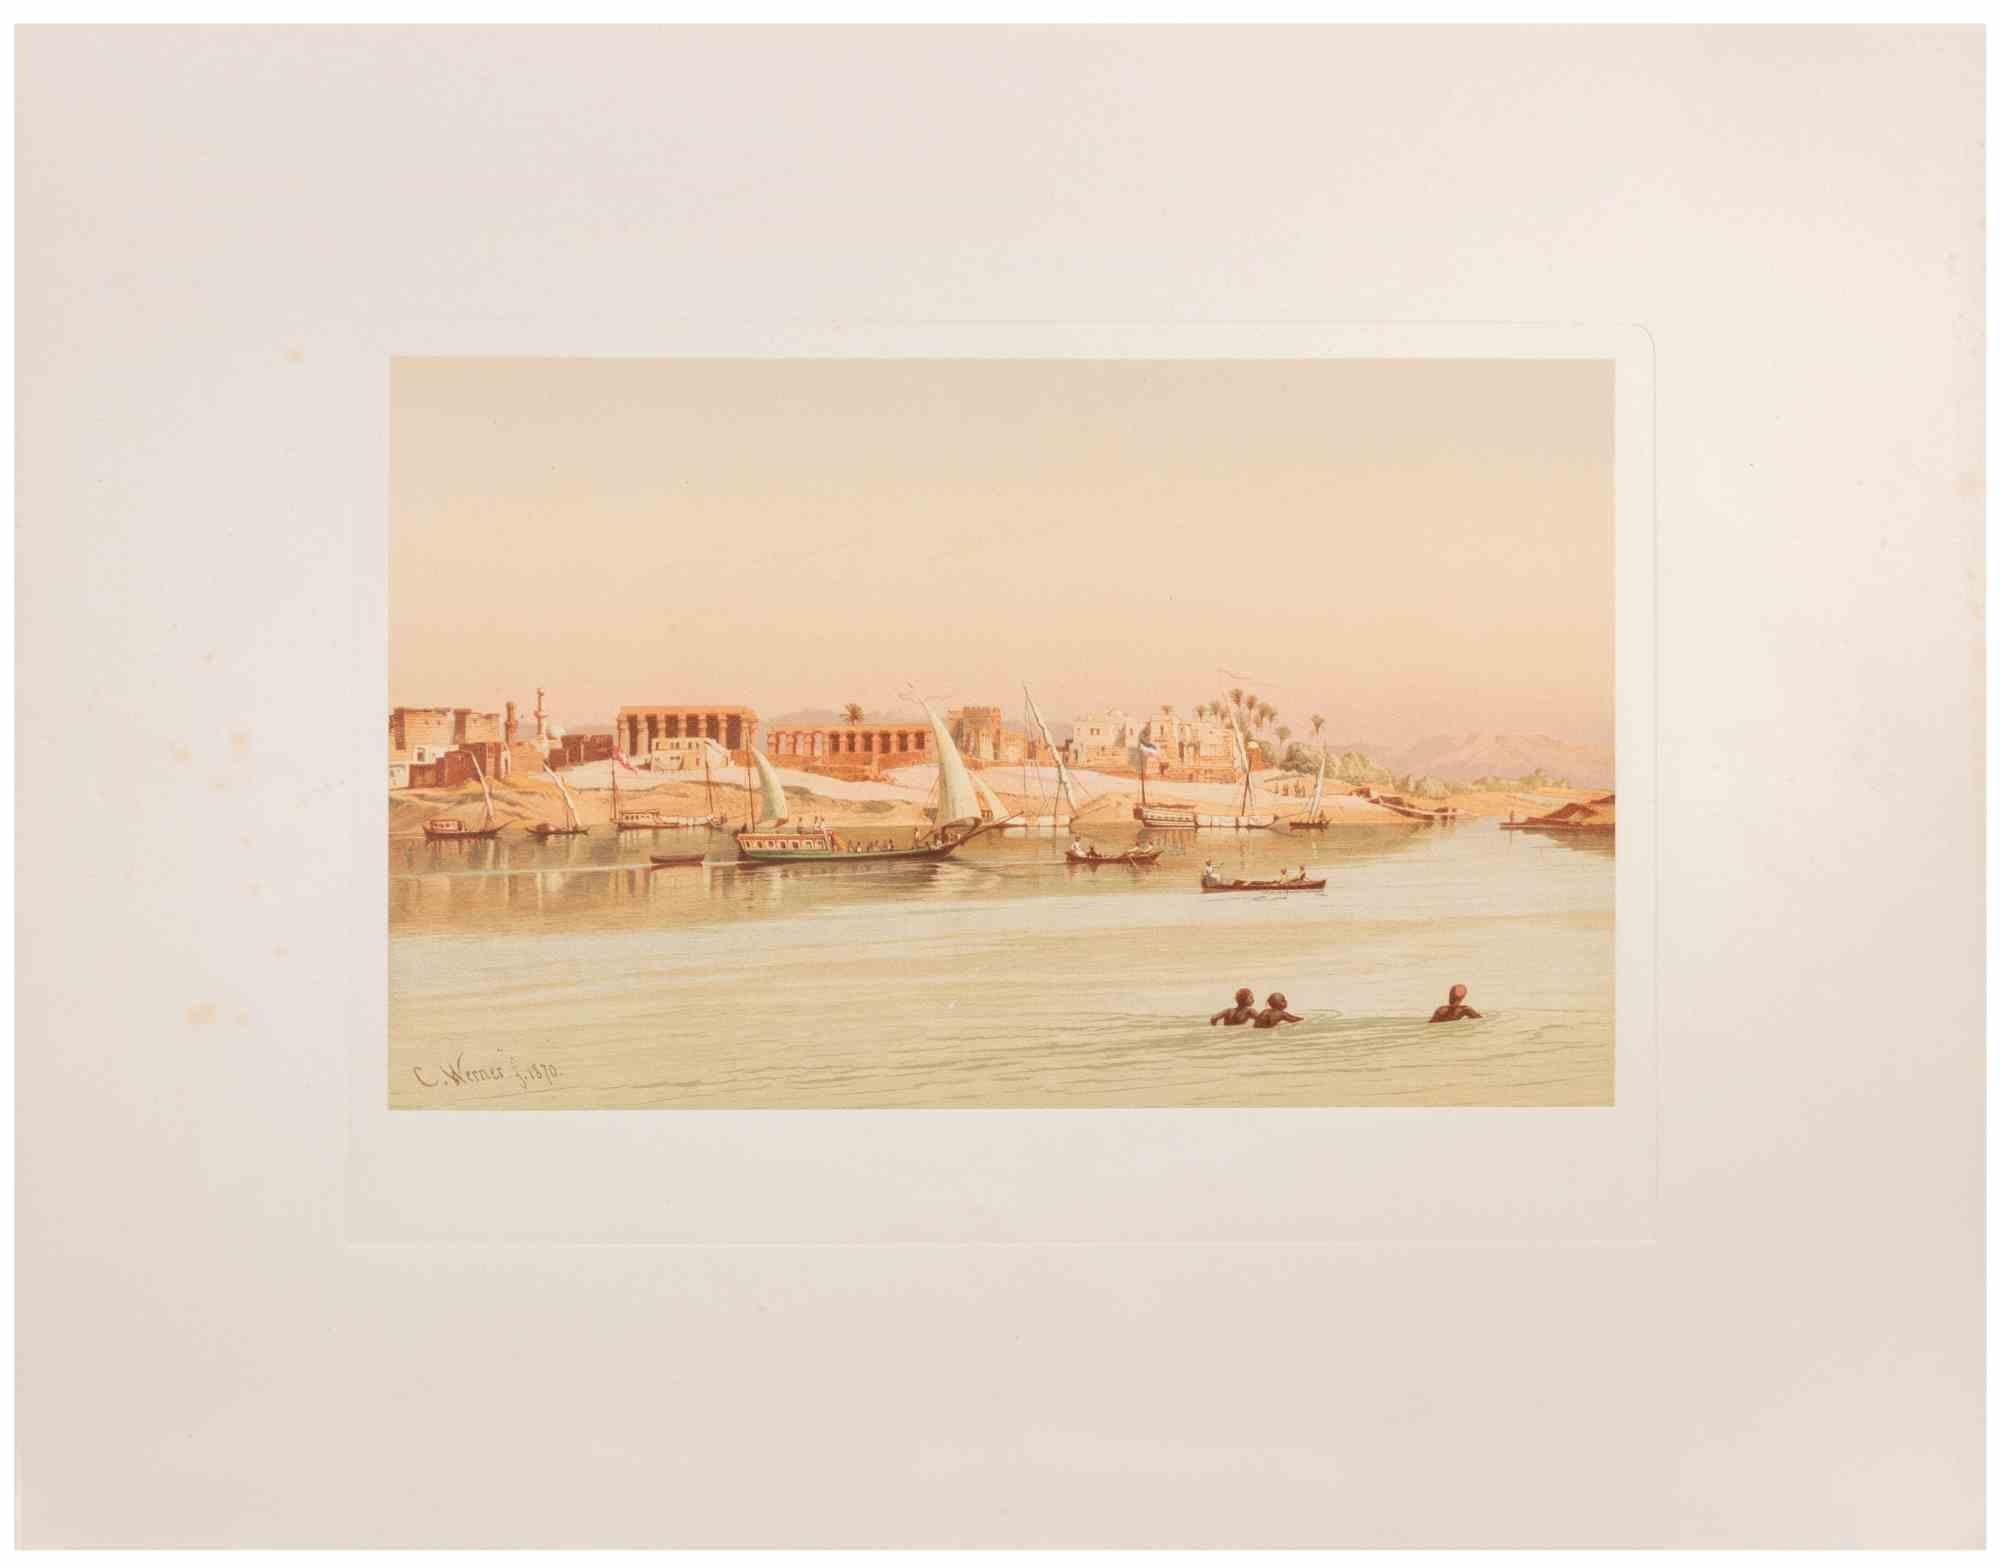 Along the Nile ist ein modernes Kunstwerk, das d'apres Karl Werner 

Gemischtfarbige Chromolithographie. 

Das Werk ist den Aquarellen nachempfunden, die der Künstler während einer Reise nach Ägypten zwischen 1862 und 1865 anfertigte.

Die